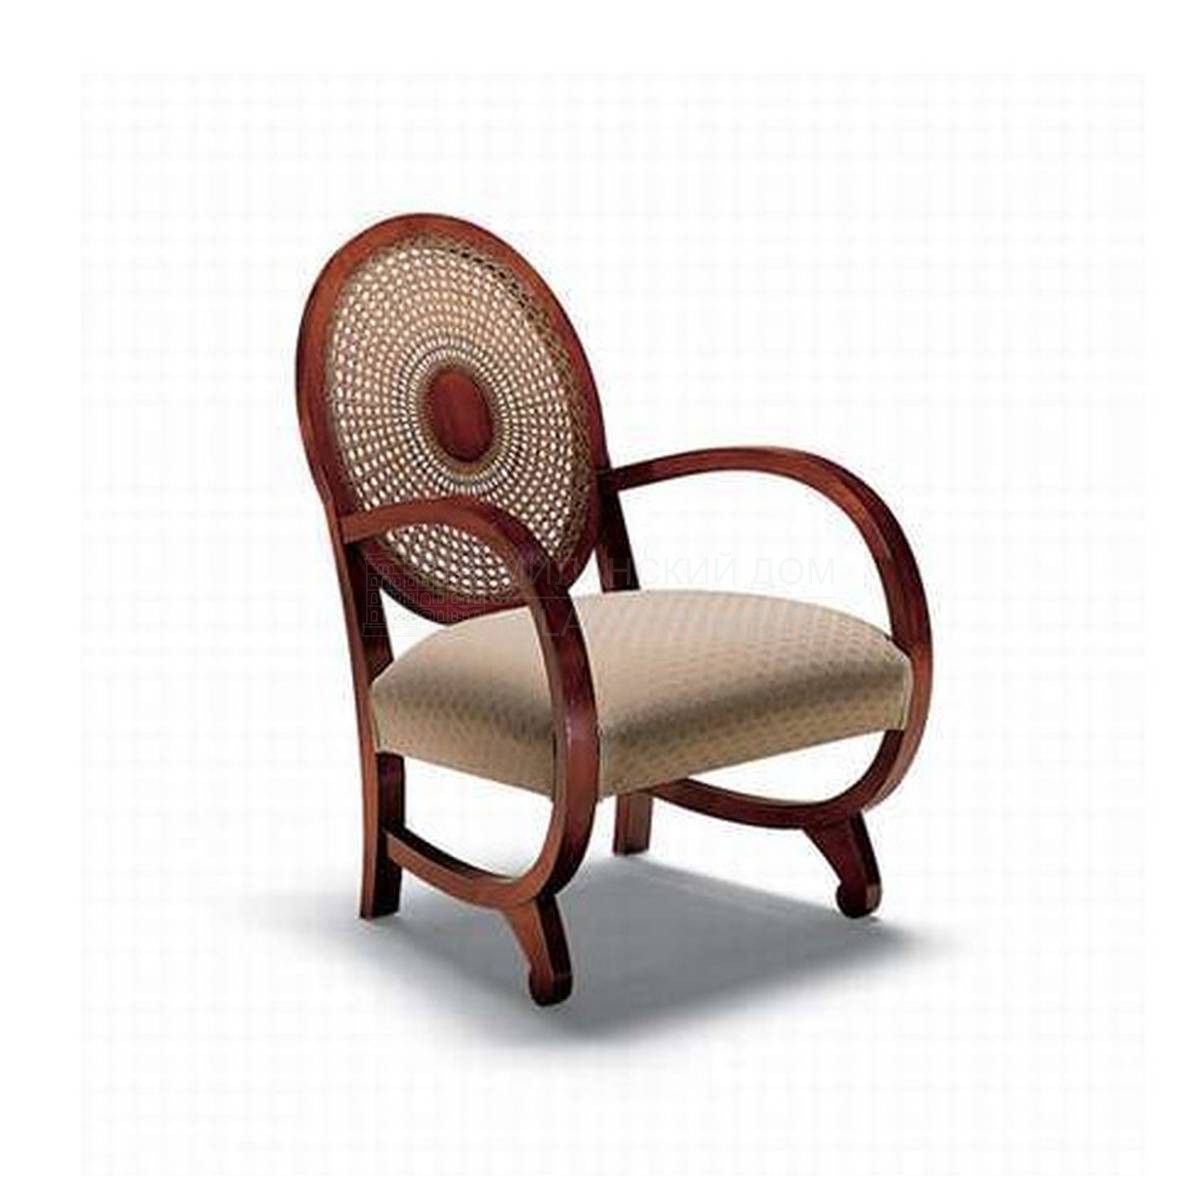 Кресло Art. 580 из Италии фабрики MEDEA